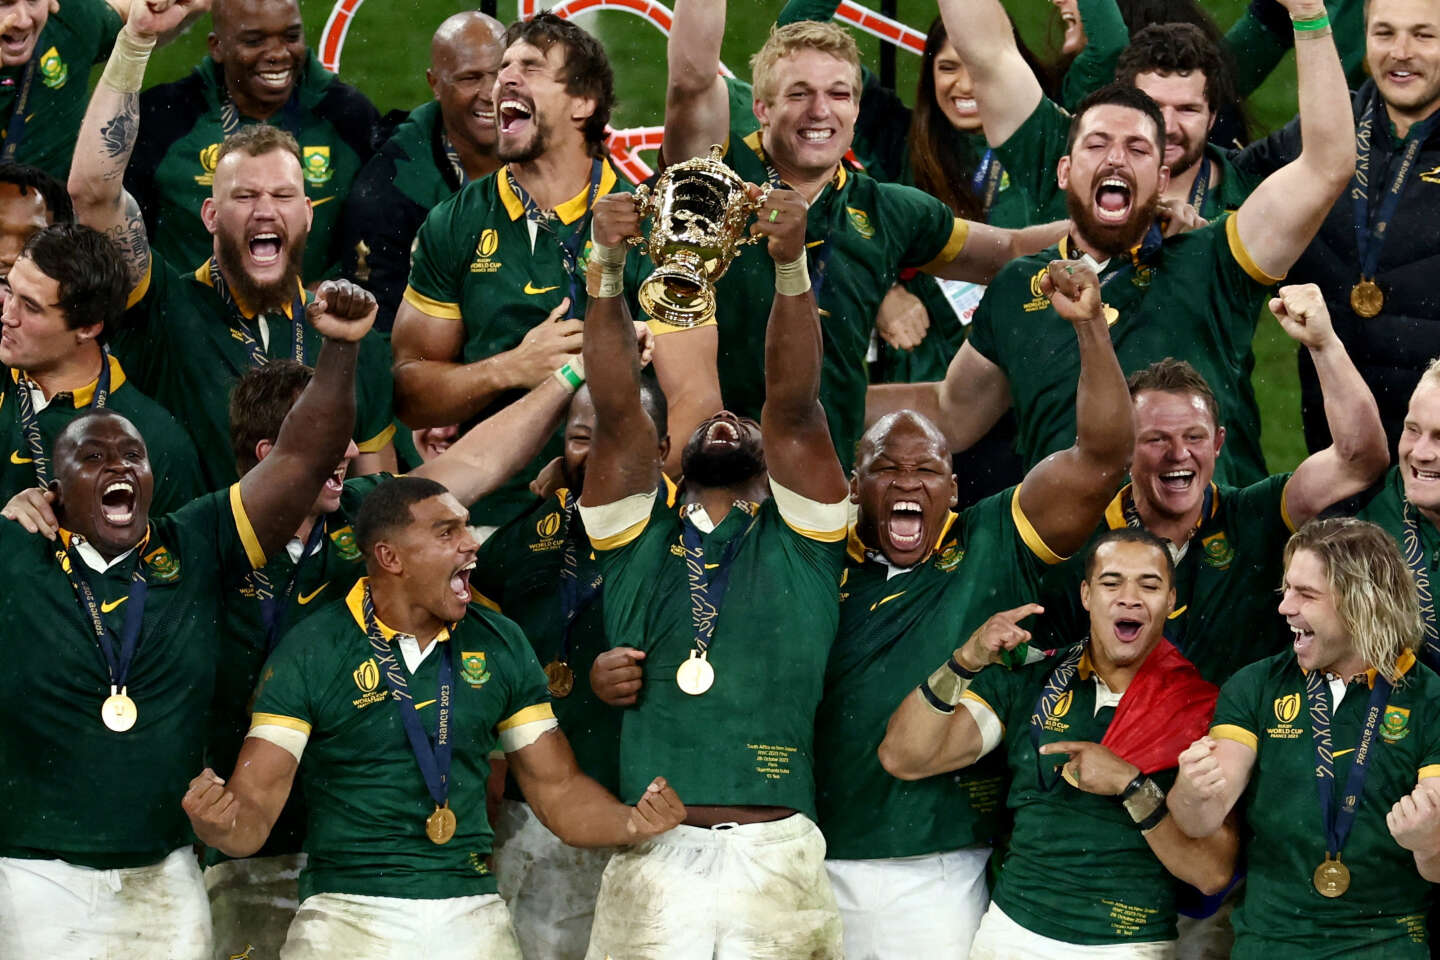 L’Afrique du Sud remporte la Coupe du monde de rugby : « ça n’a pas toujours été beau à voir mais ça a été magnifique », selon la presse étrangère